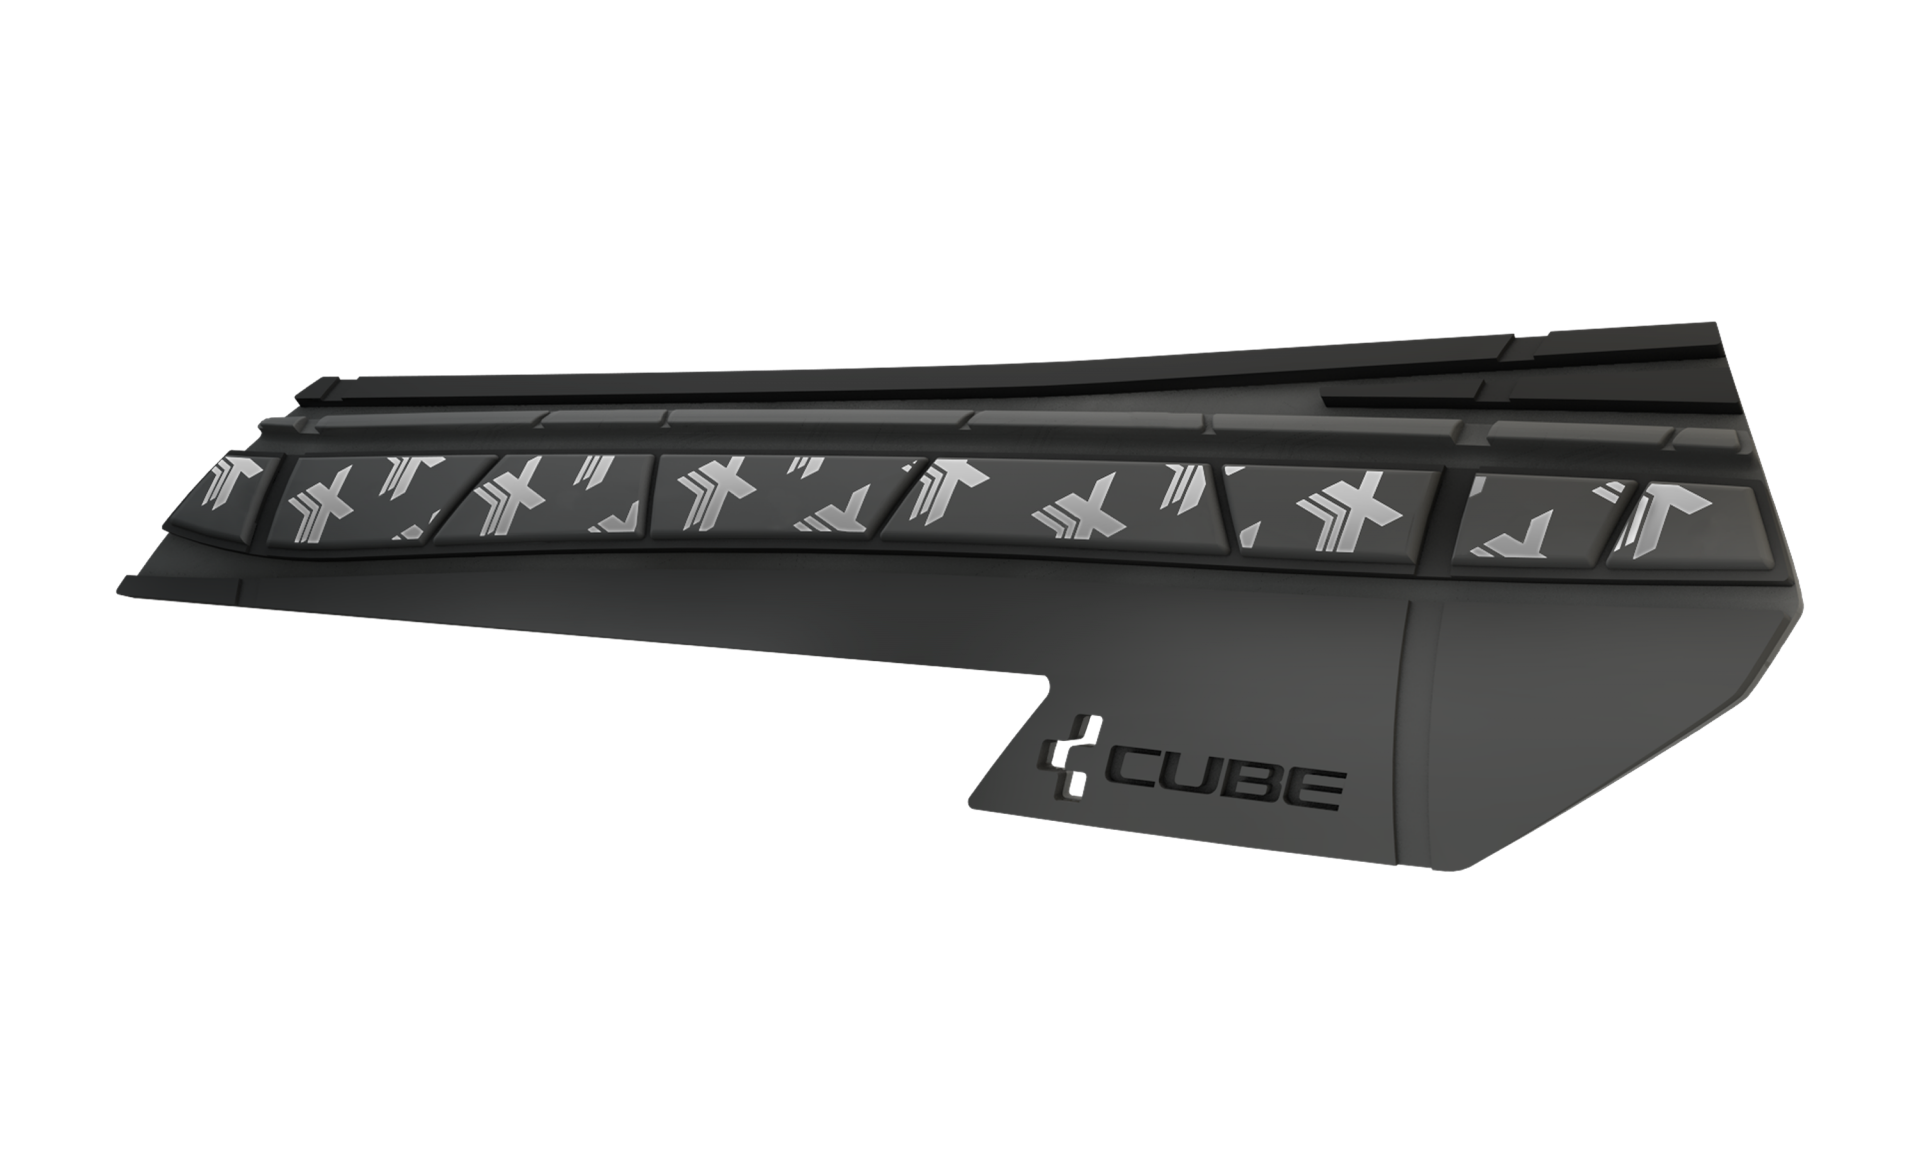 Cube HPX Chain Stay Framebescherming Zwart/Grijs